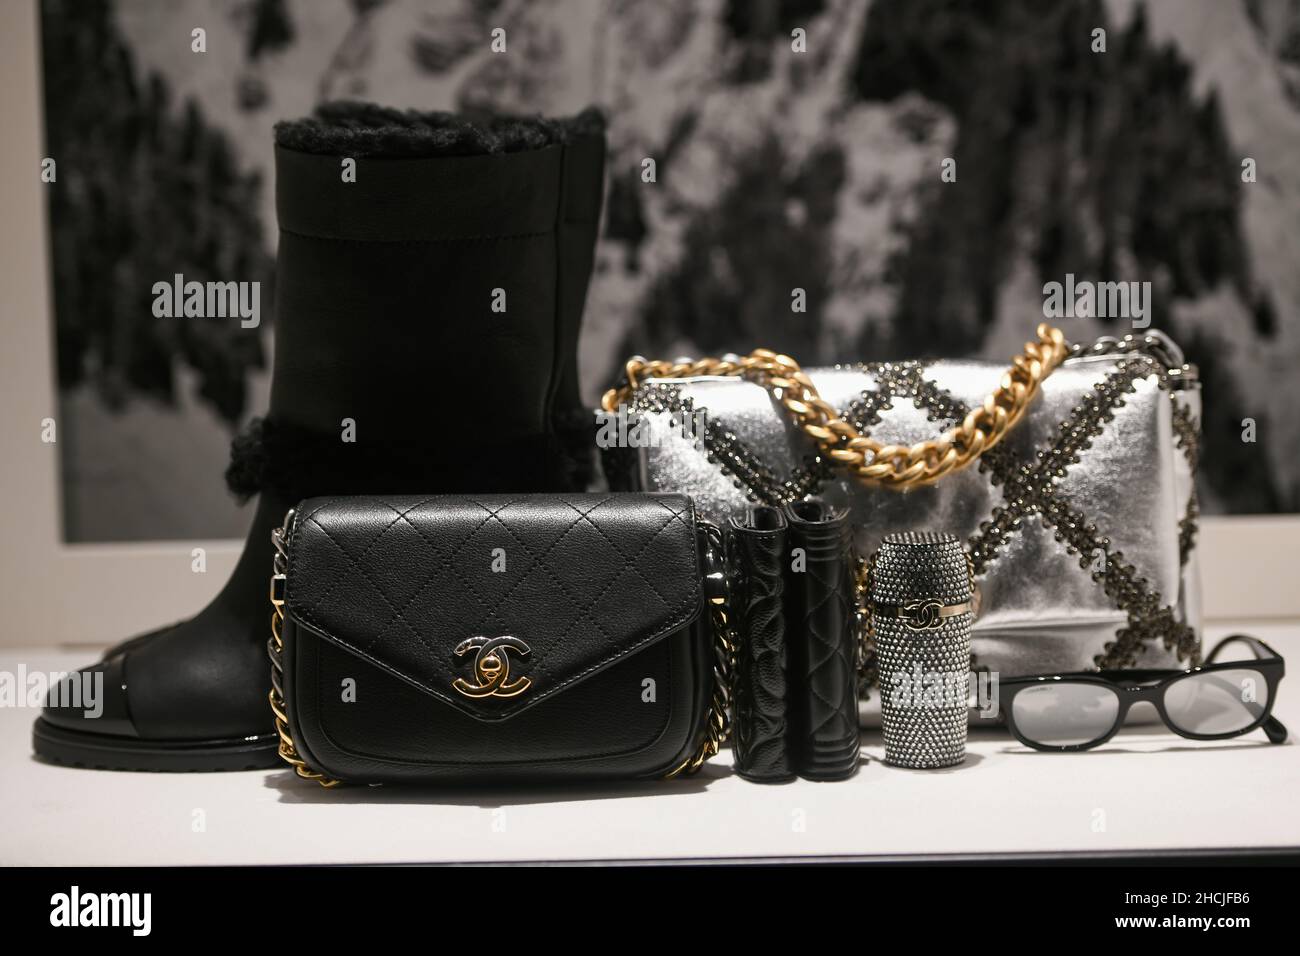 Milan, Italie - 24 septembre 2021 : vêtements et accessoires de luxe et à la mode Chanel de la nouvelle collection 2022, vitrine close-up Banque D'Images